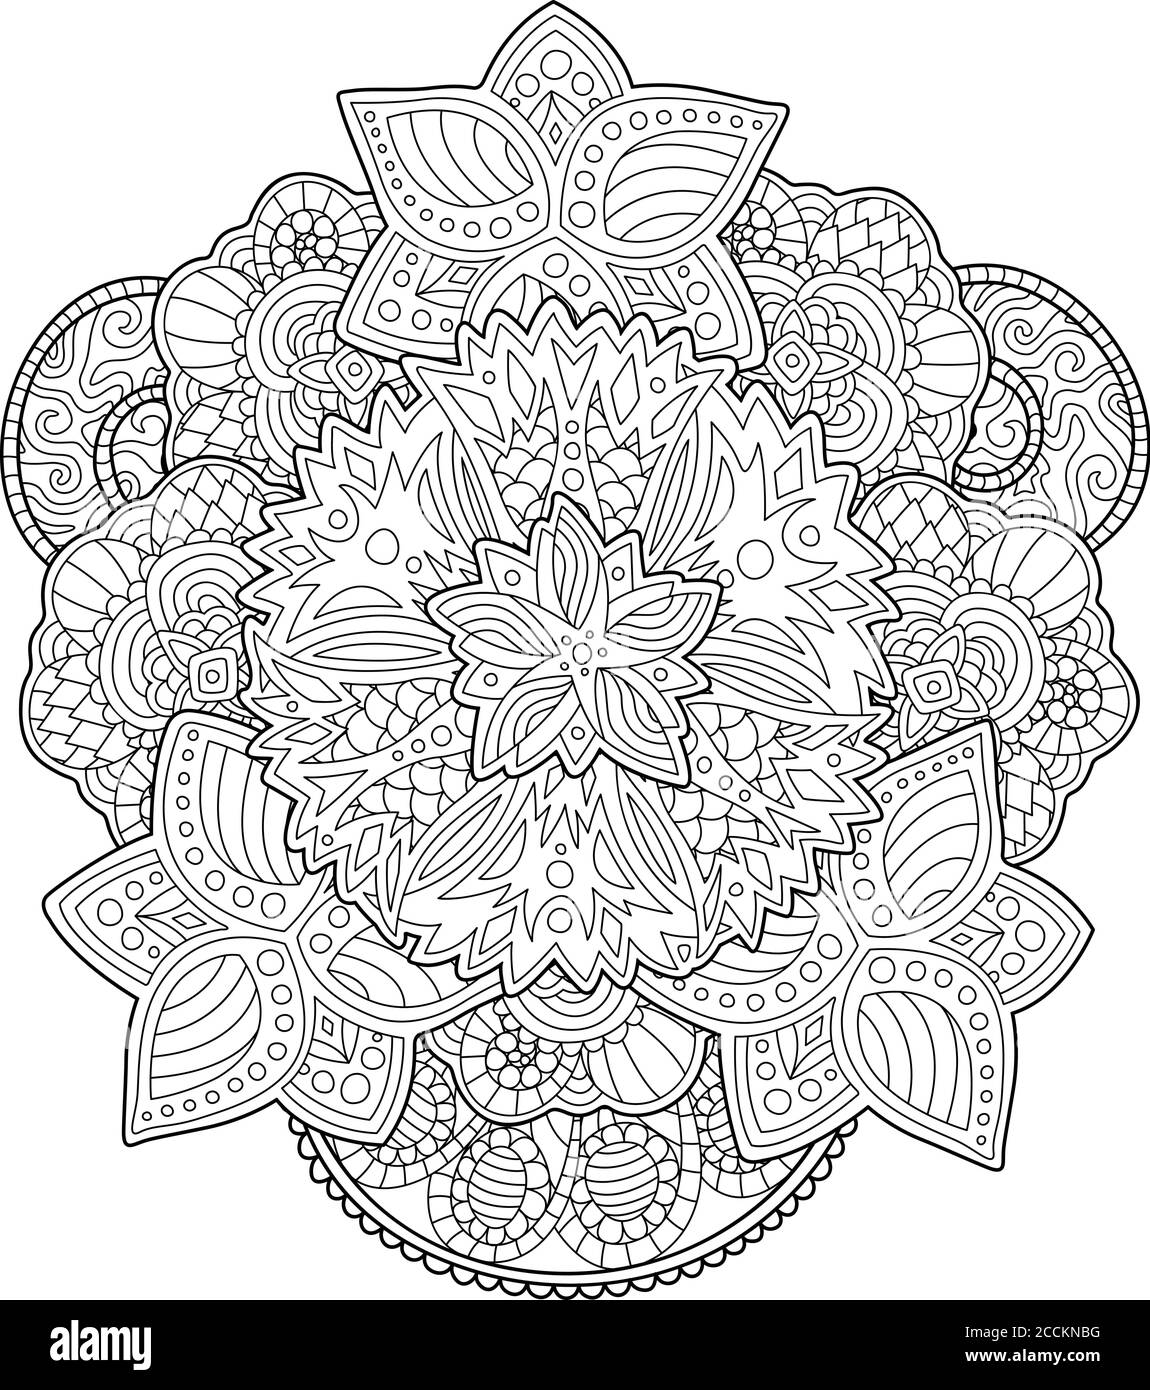 Erwachsene Malbuch Seite mit schönen stilisierten Blumen auf weiß Hintergrund Stock Vektor